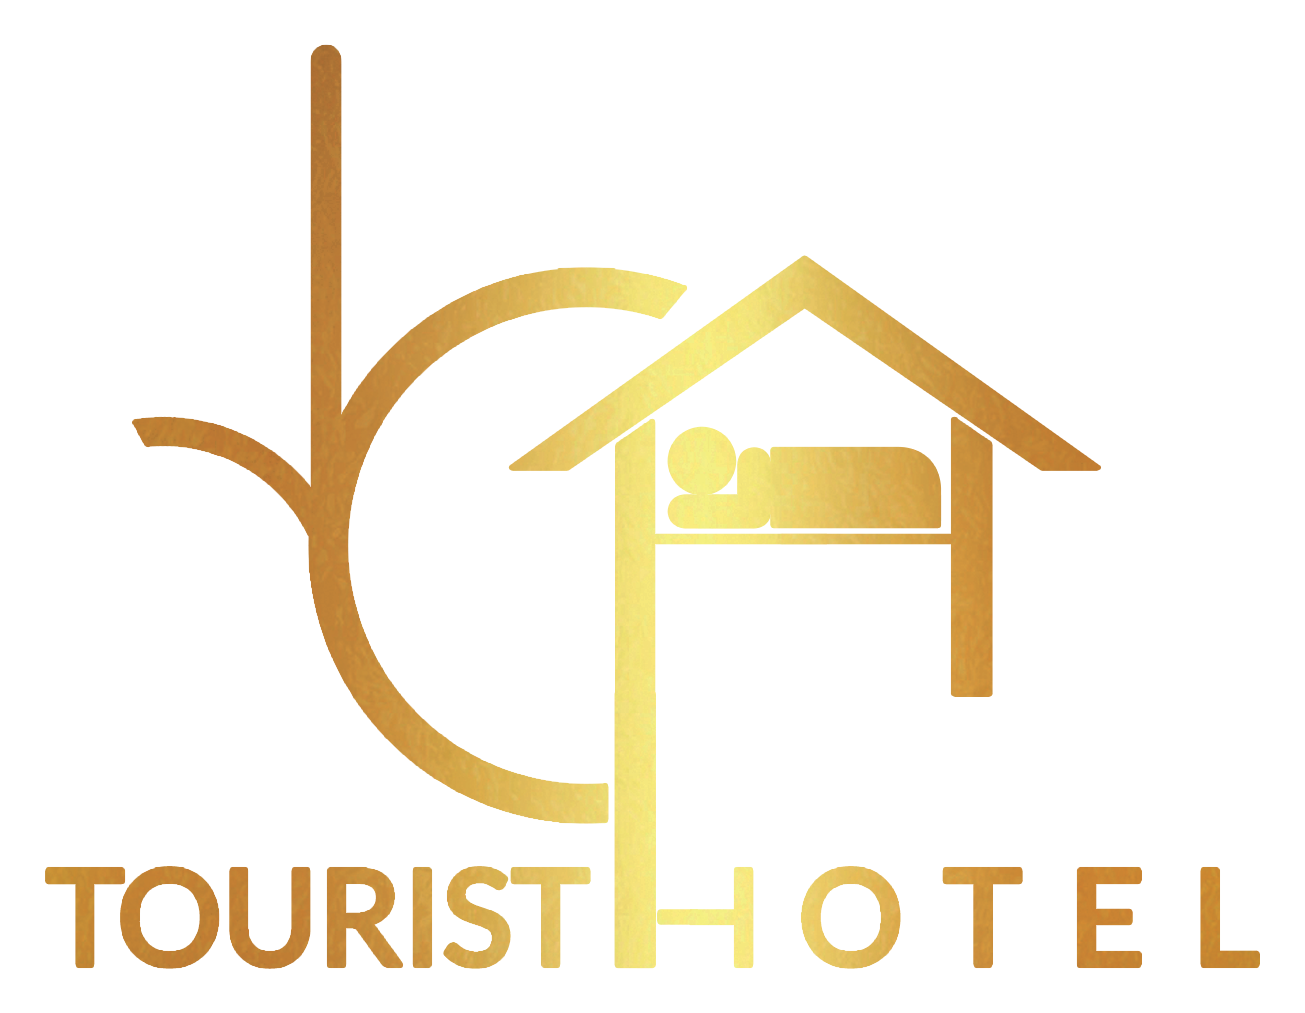 اسعار الفنادق في وسط البلد - فندق وسط البلد - عروض فنادق وسط البلد و اسعارها